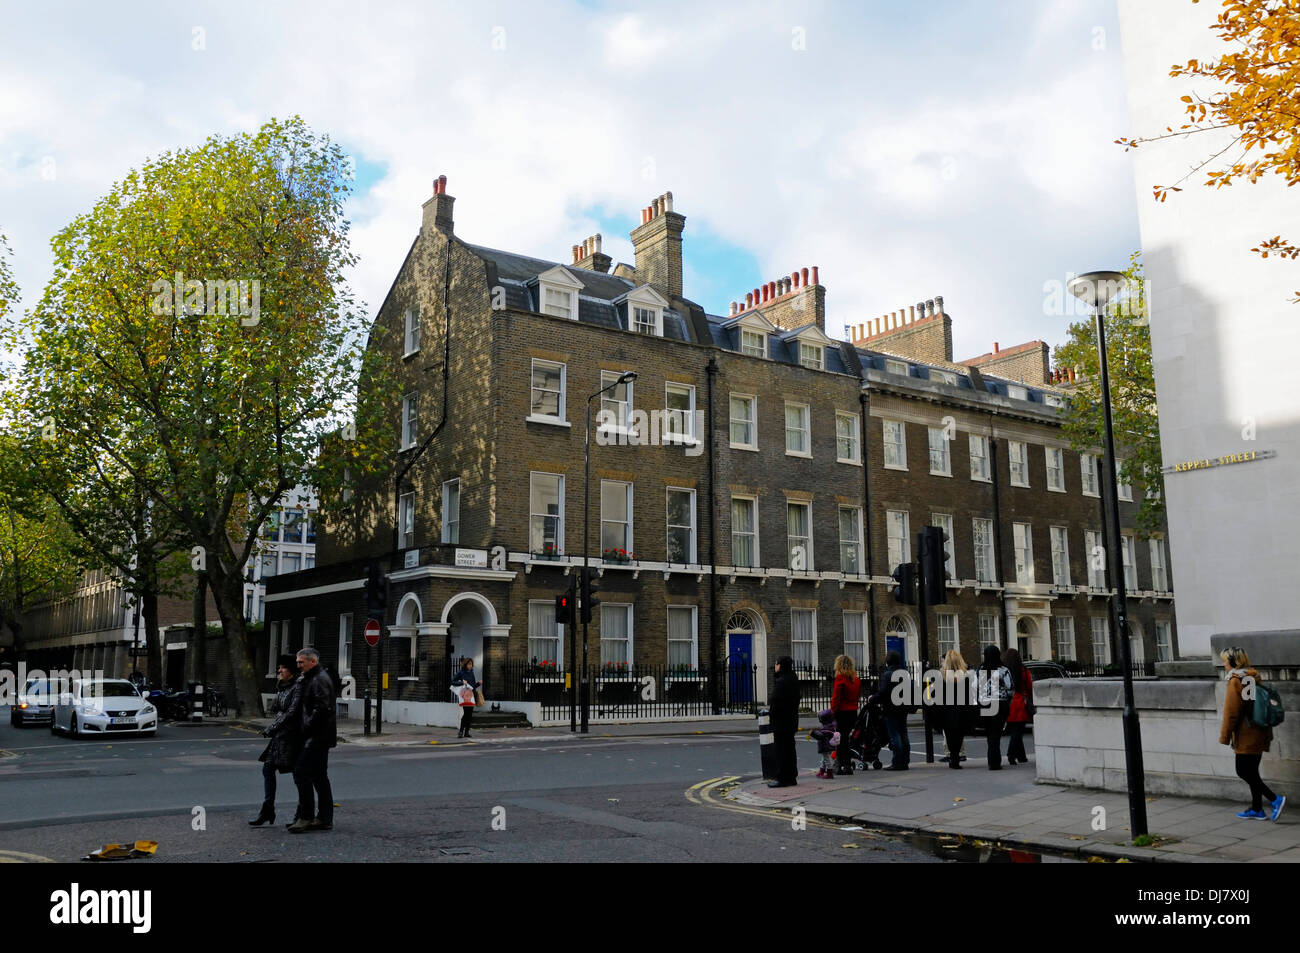 Belebten Ecke Gower Street / Kepel Street zeigt georgischen Reihenhaus Häuser mit Menschen beim Überqueren der Straße Bloomsbury London UK Stockfoto